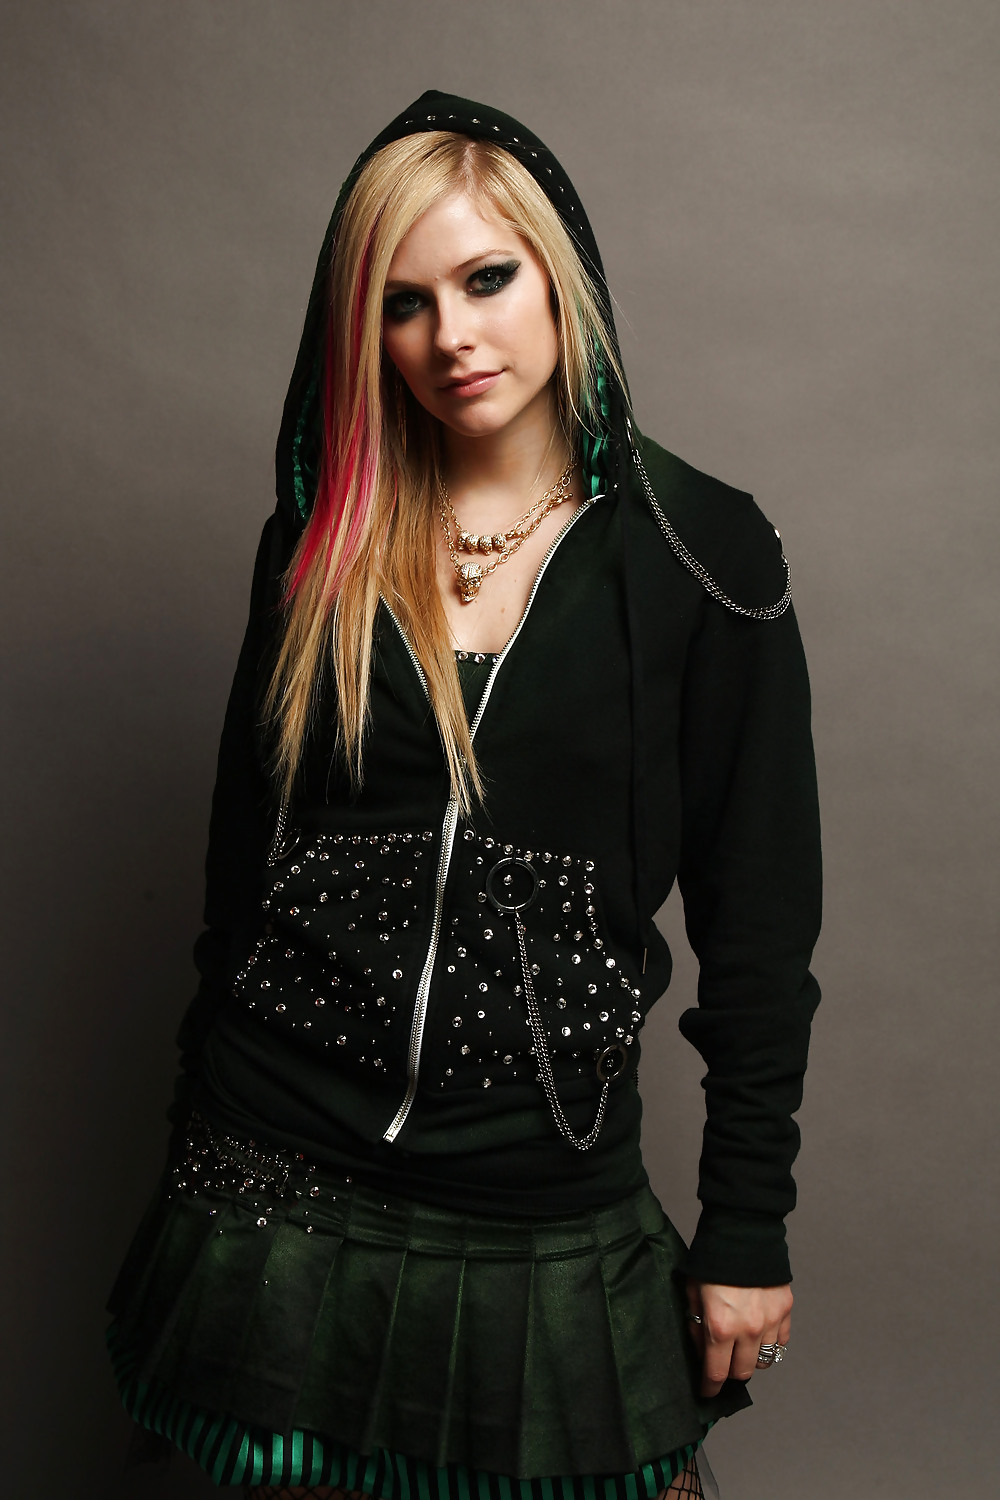 Avril Lavigne #12264138